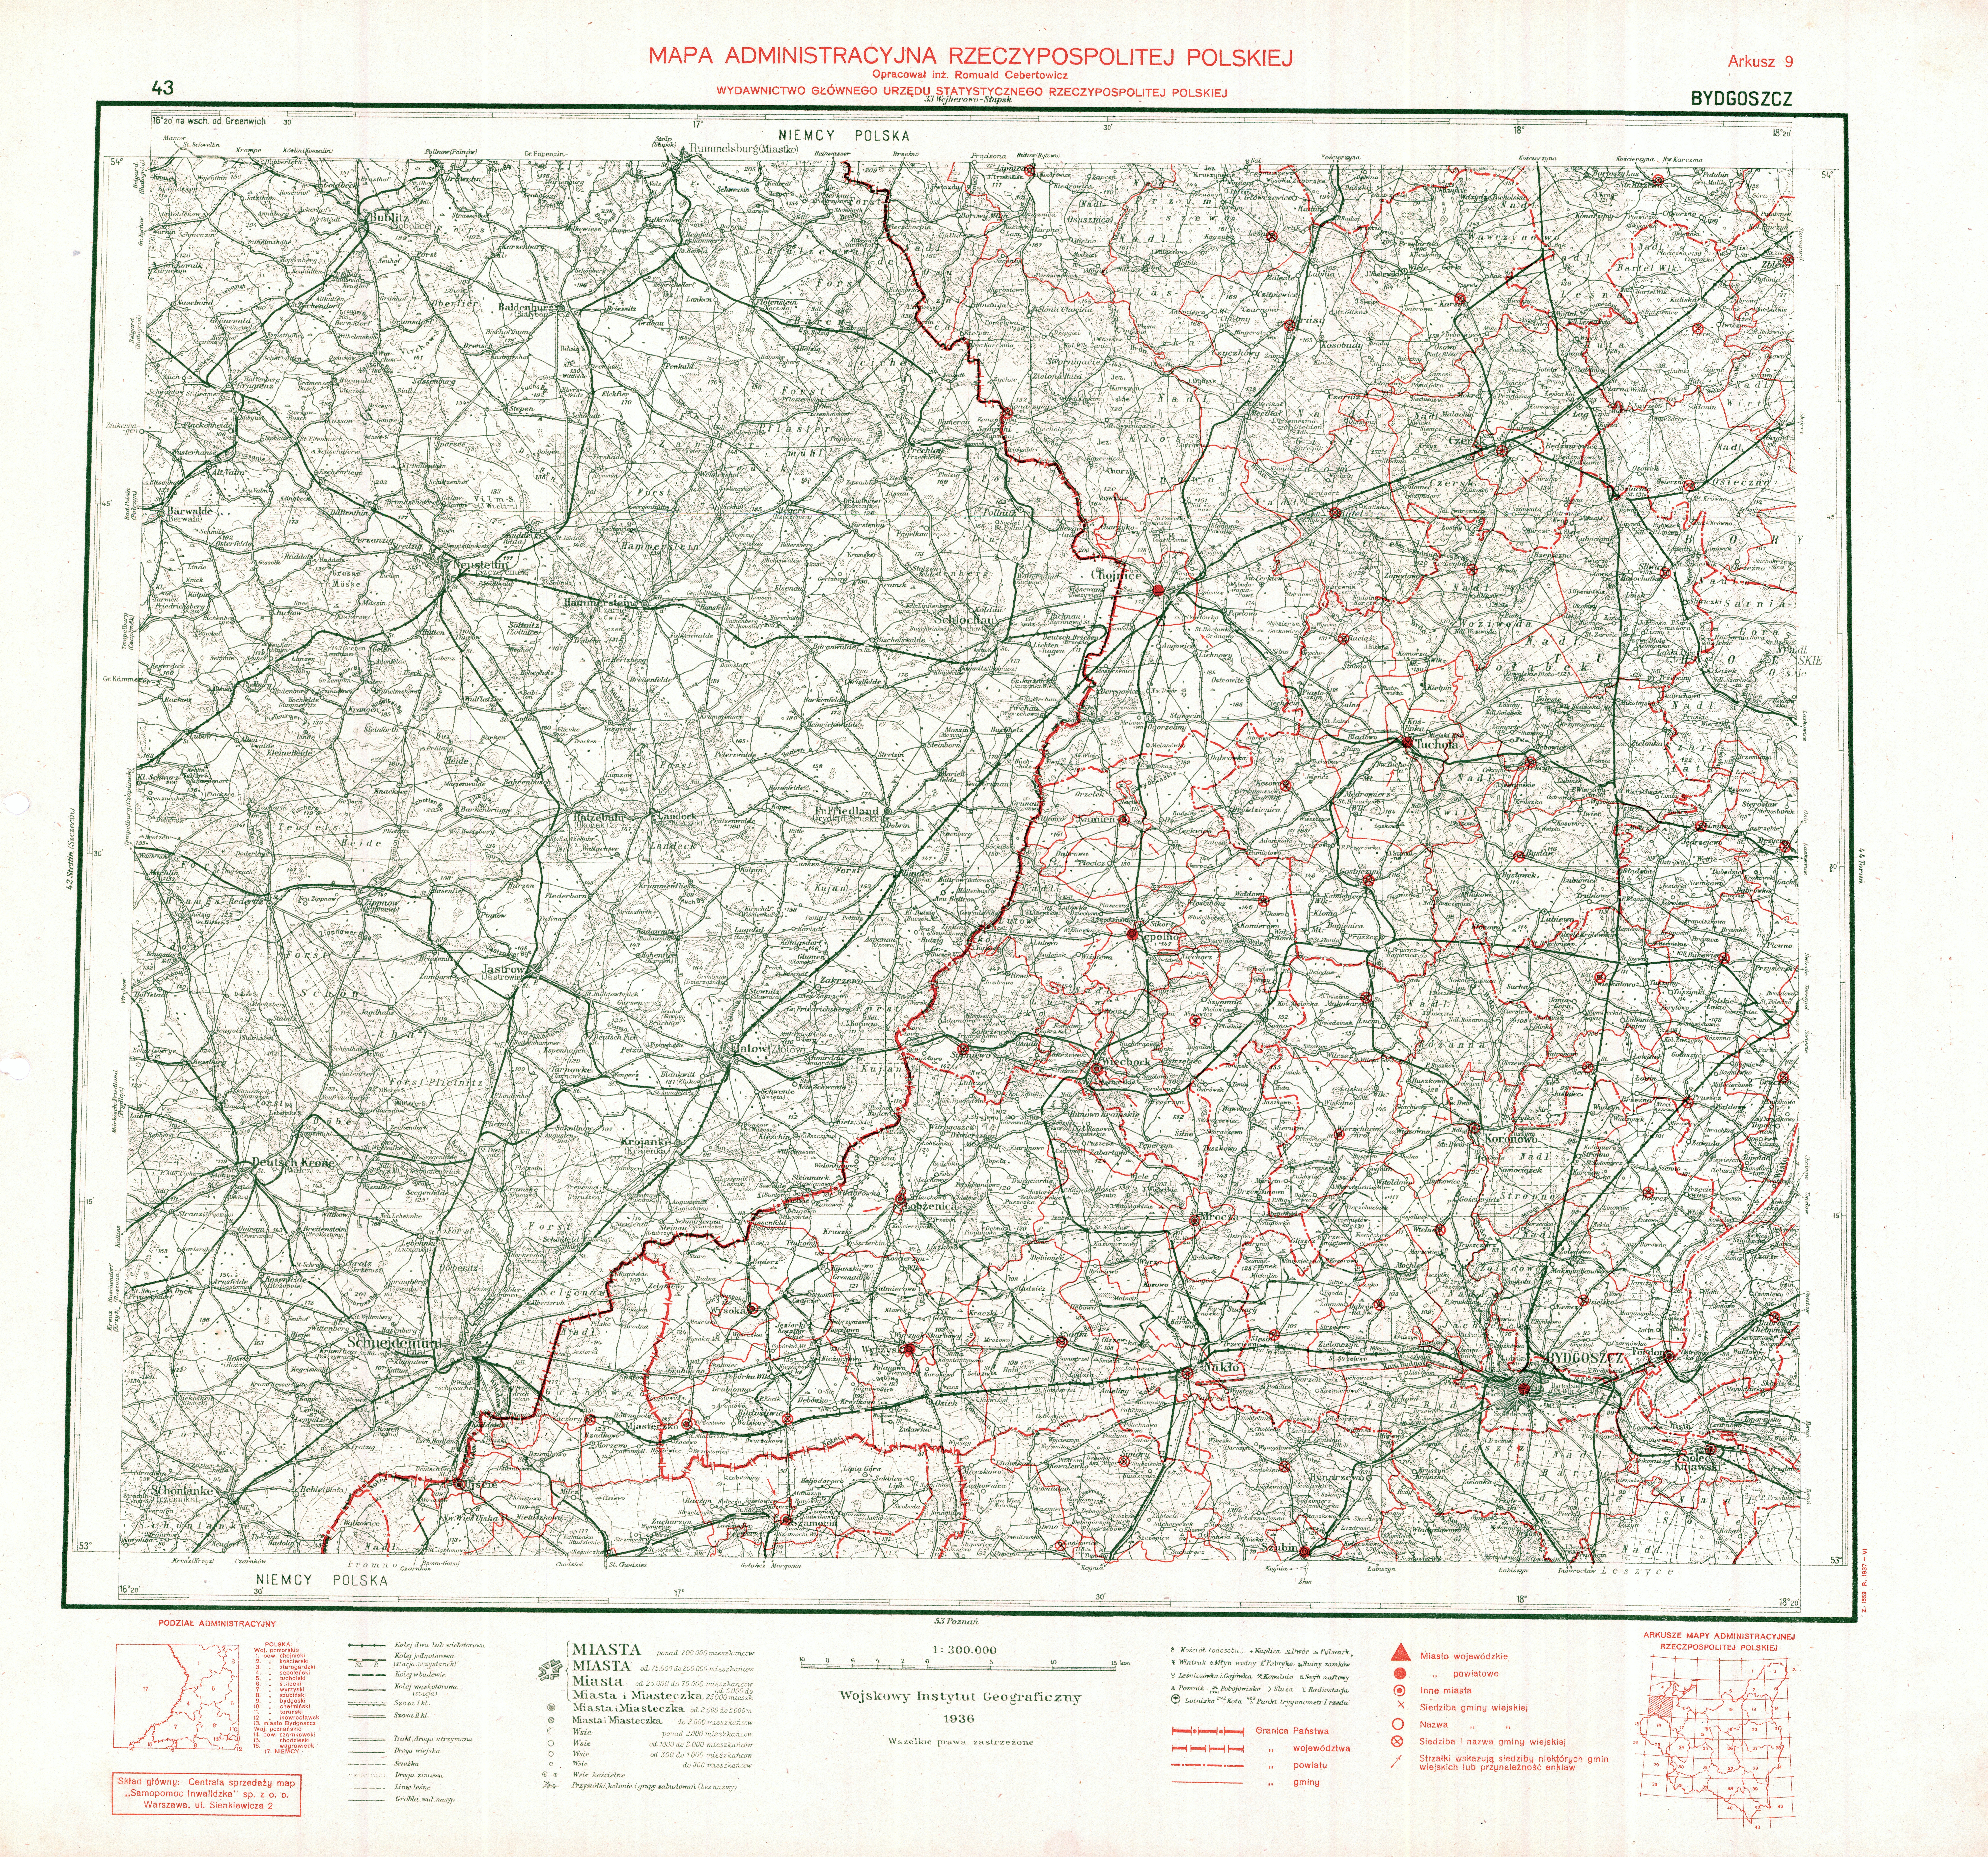 1-300000 WIG Mapa administracyjna II RP 1937 - MARP_9_BYDGOSZXCZ_1937.jpg